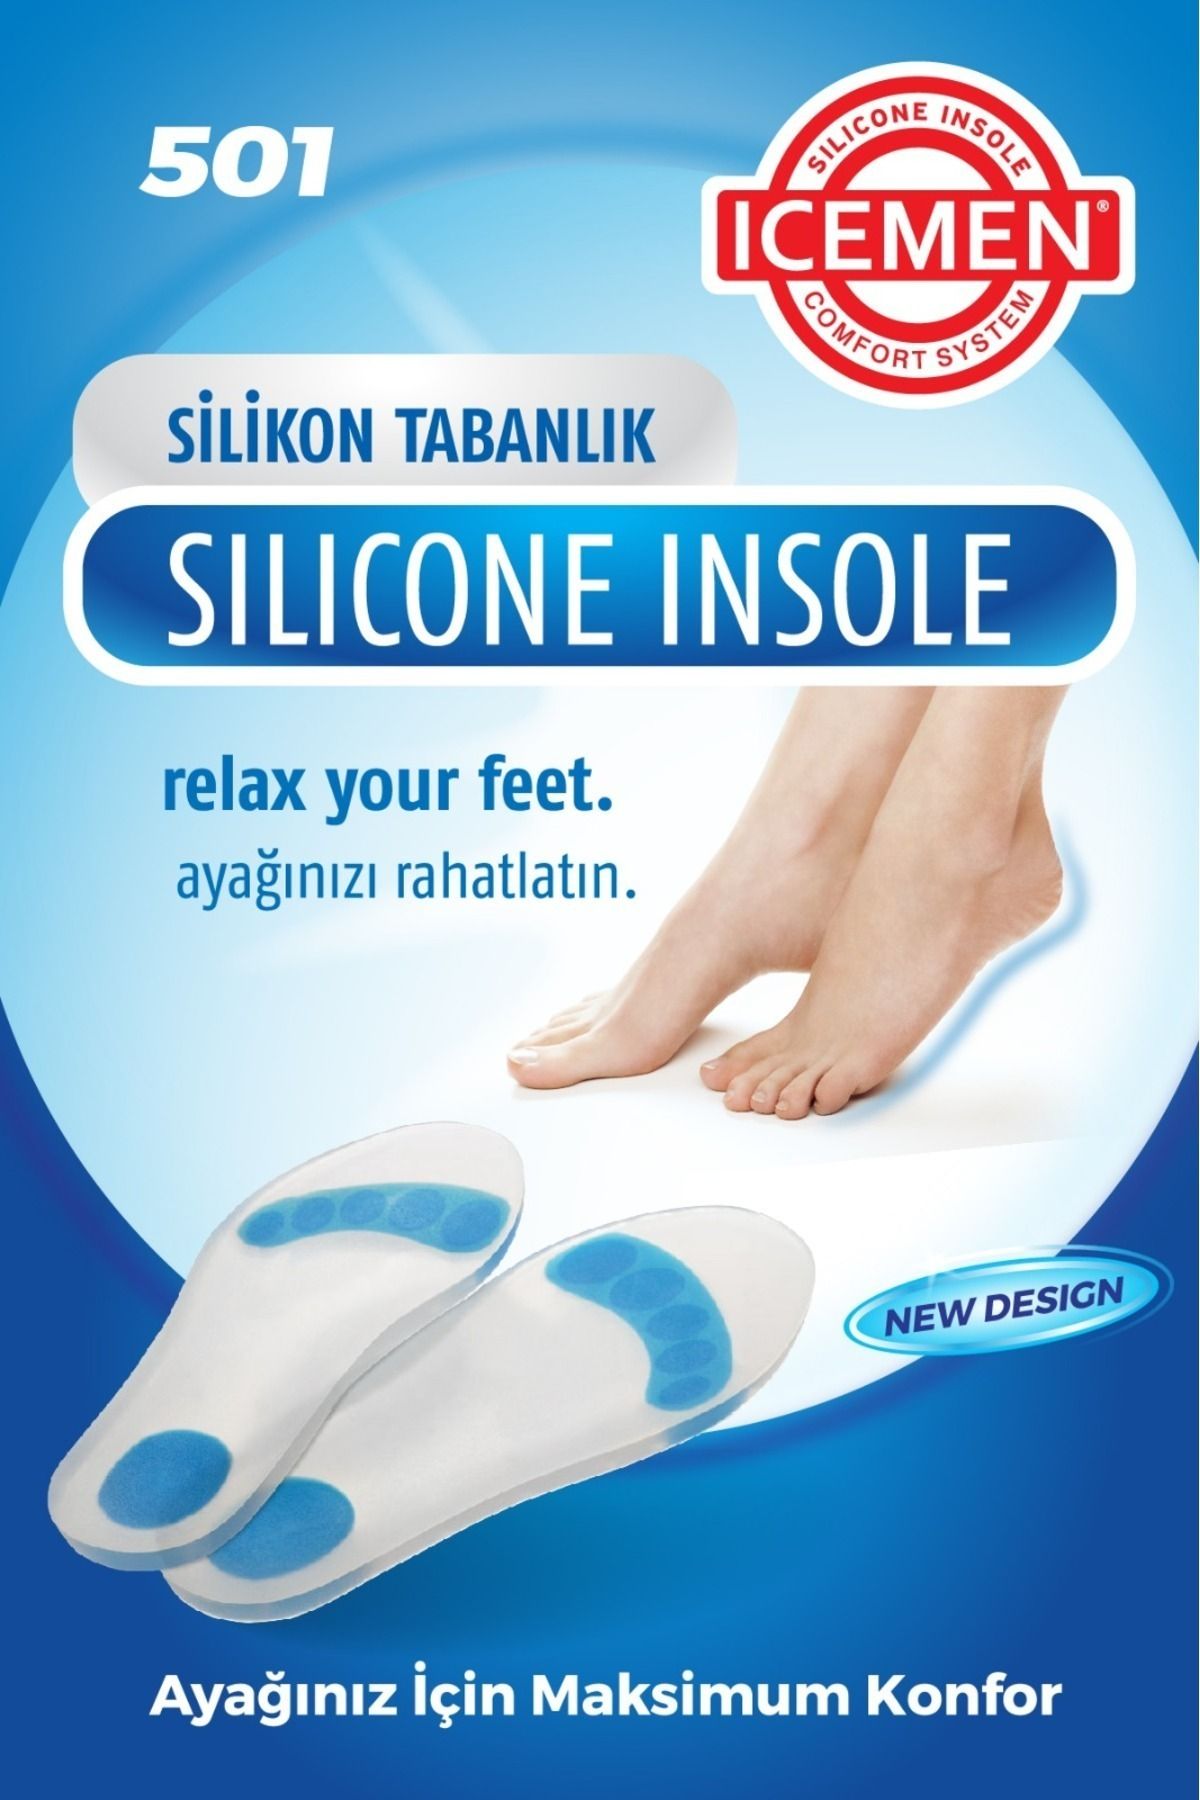 Icemen 501 - Silikon Tabanlık Tam Ortopedik Anatomik Silikon Ayakkabı Tabanlığı Topuk Dikeni Tabanlık